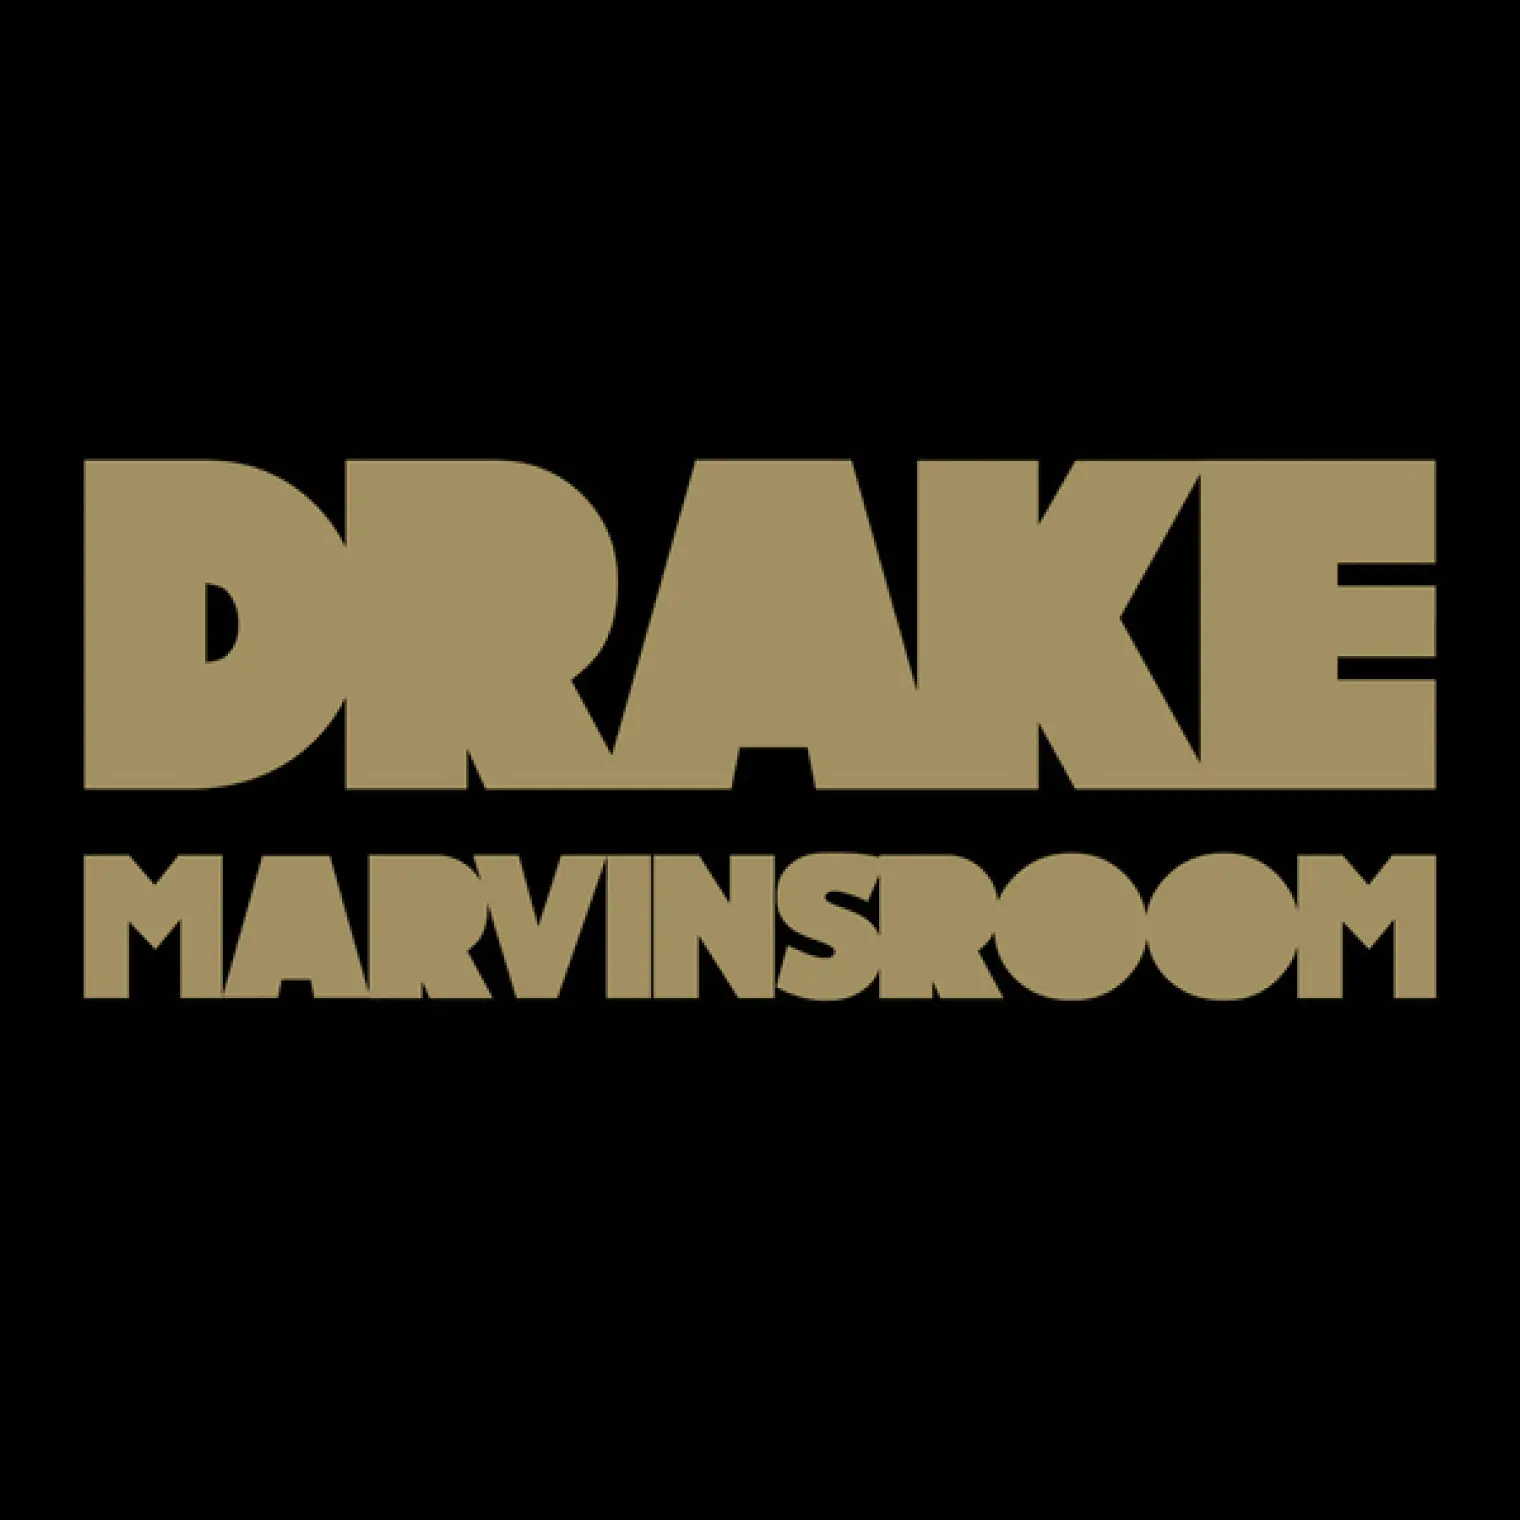 Marvins Room -  Drake 